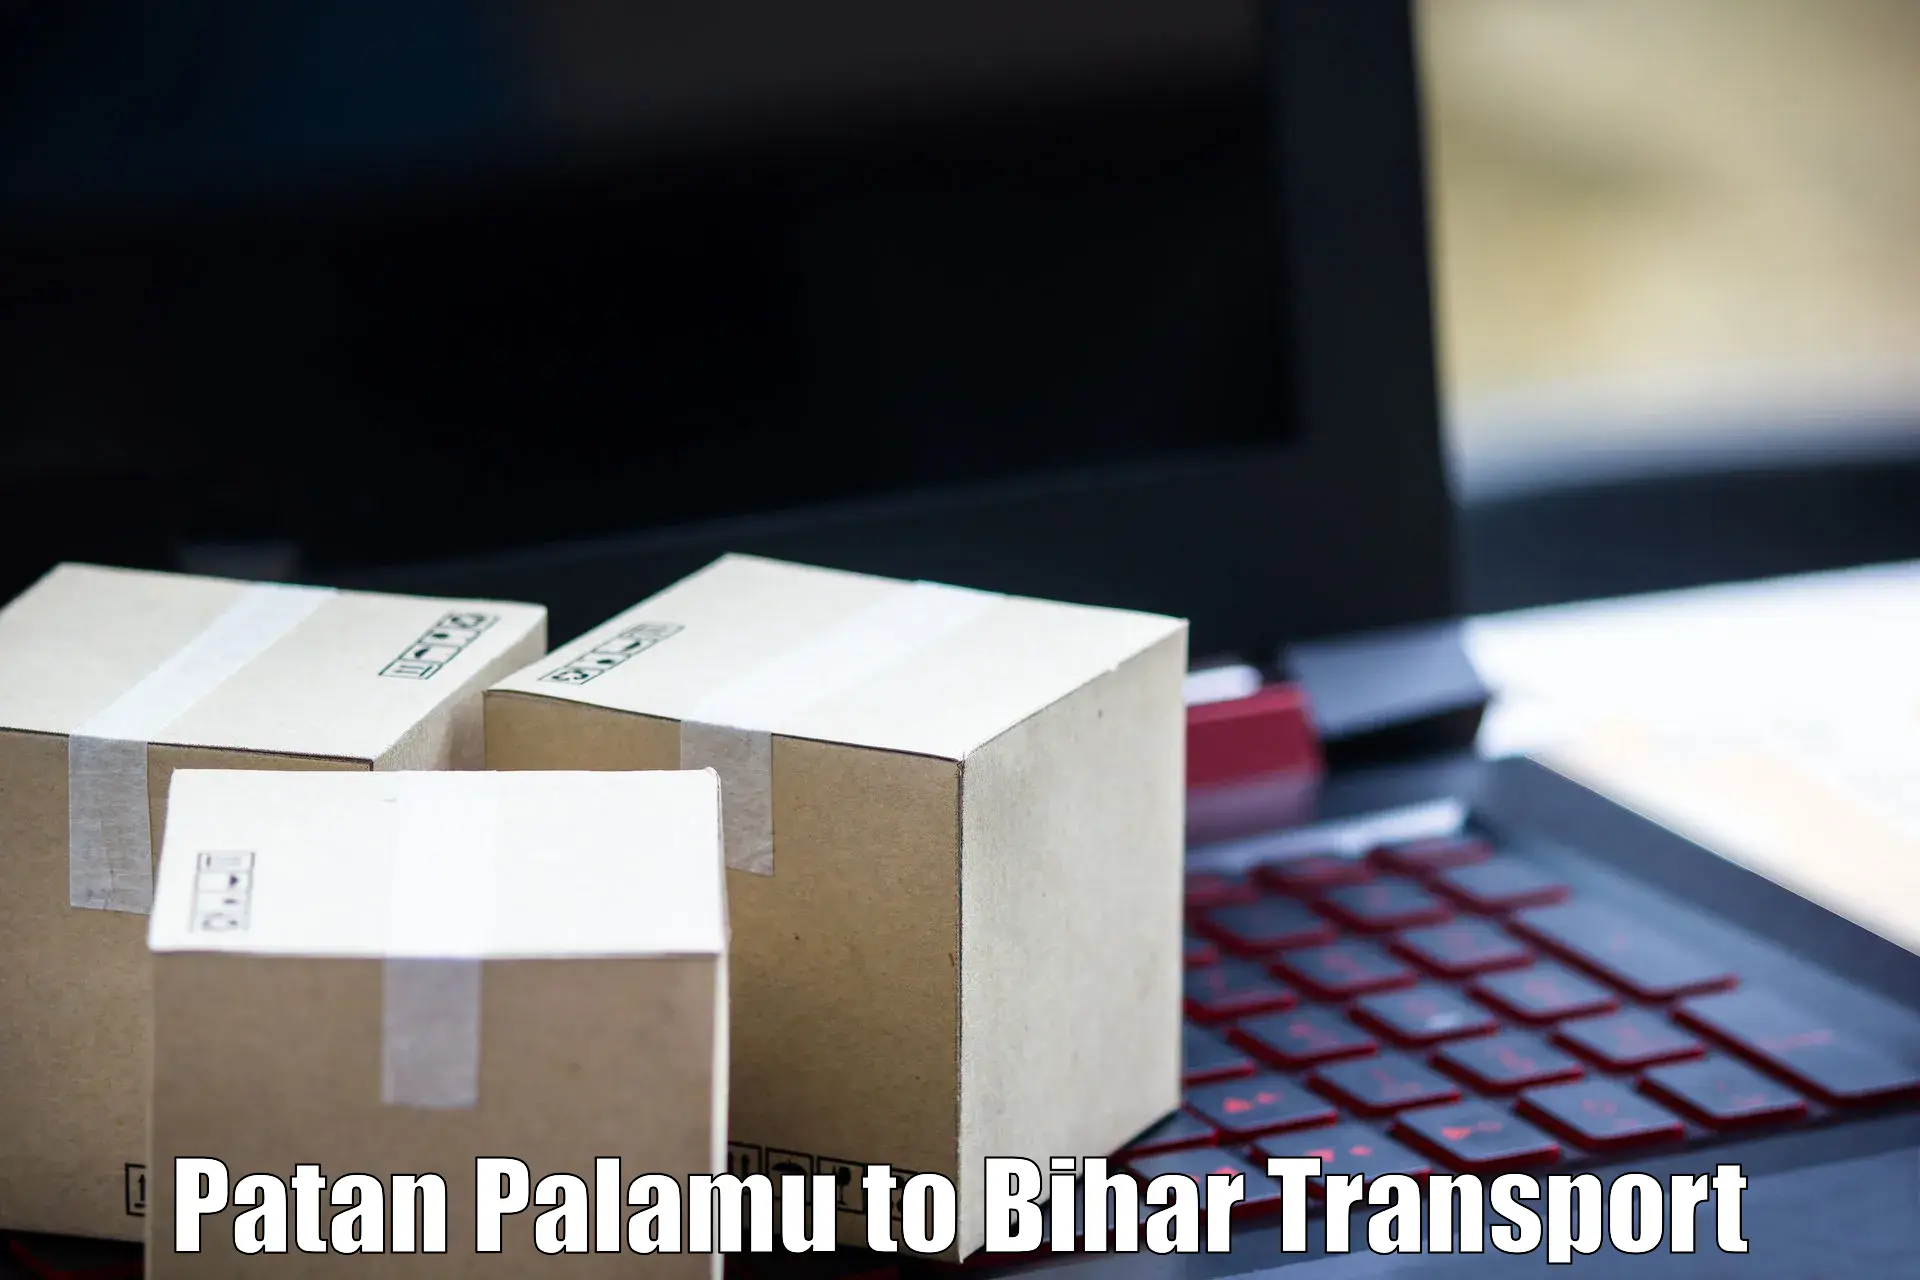 Online transport service Patan Palamu to Sonbarsa